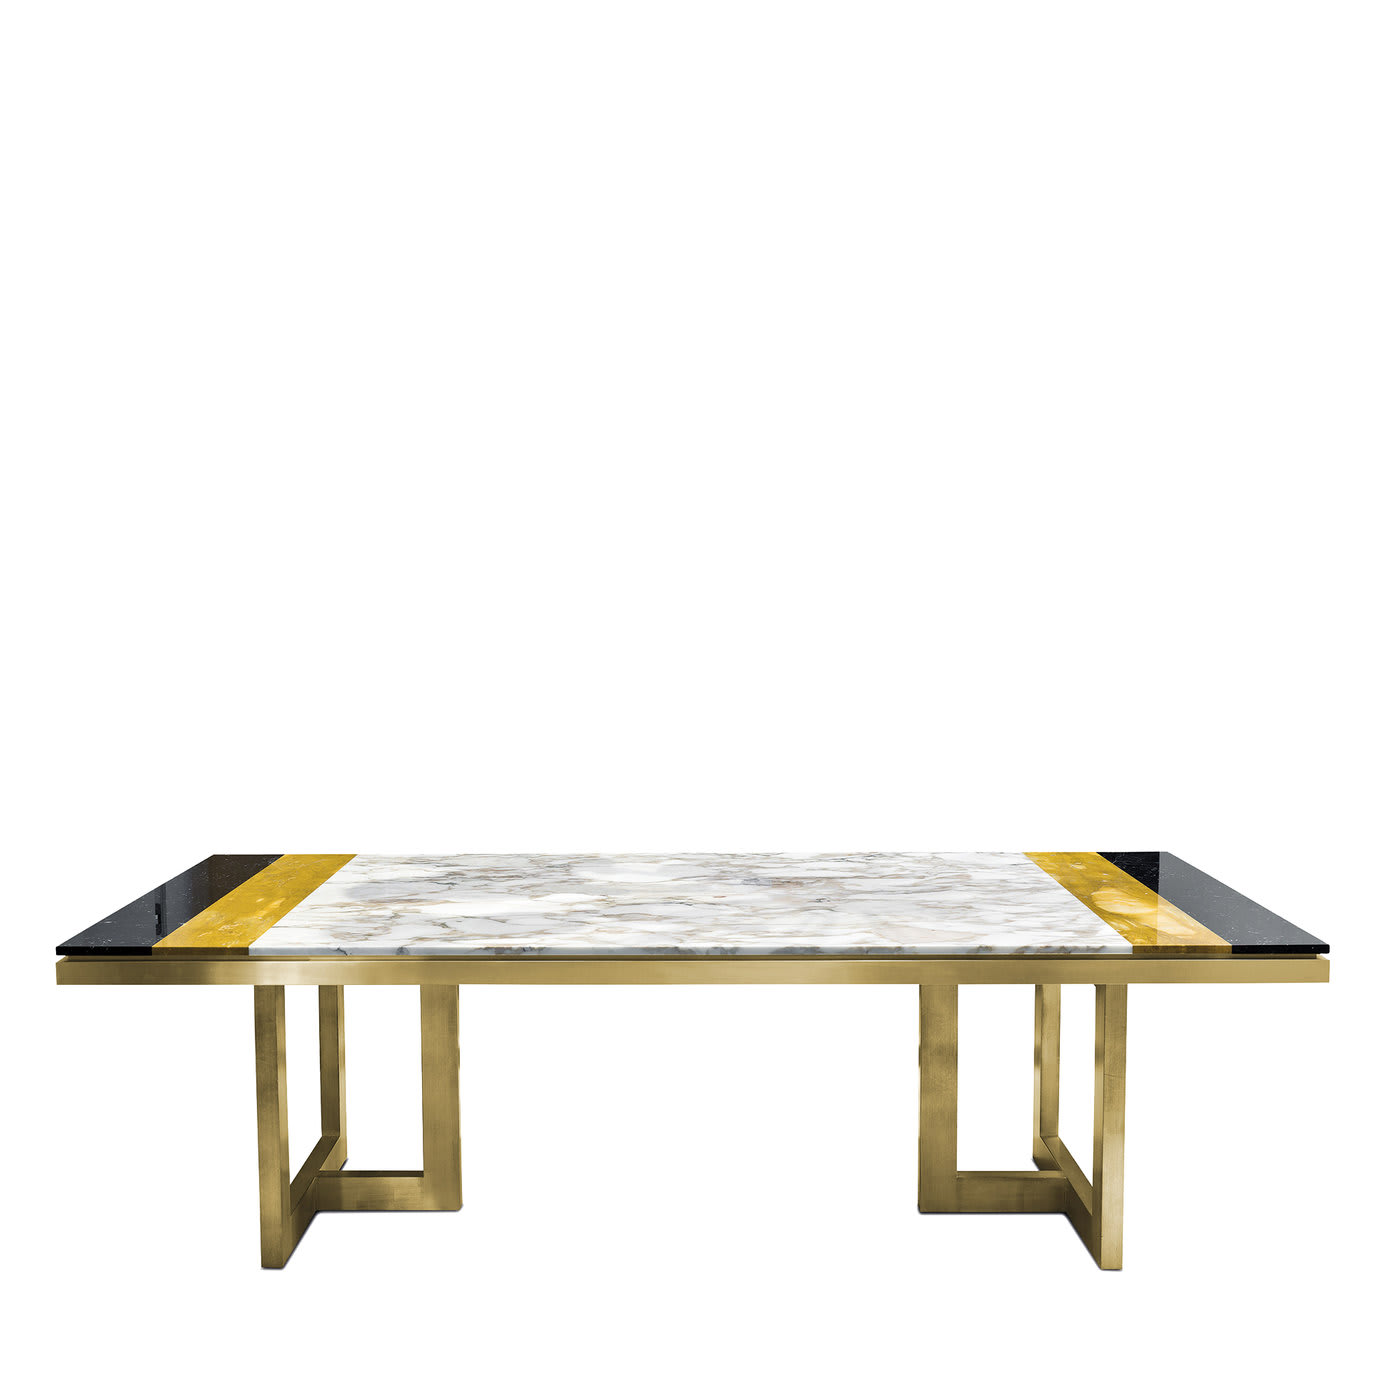 Otello Table in Calacatta and Marquina Marbles - Chiara Provasi